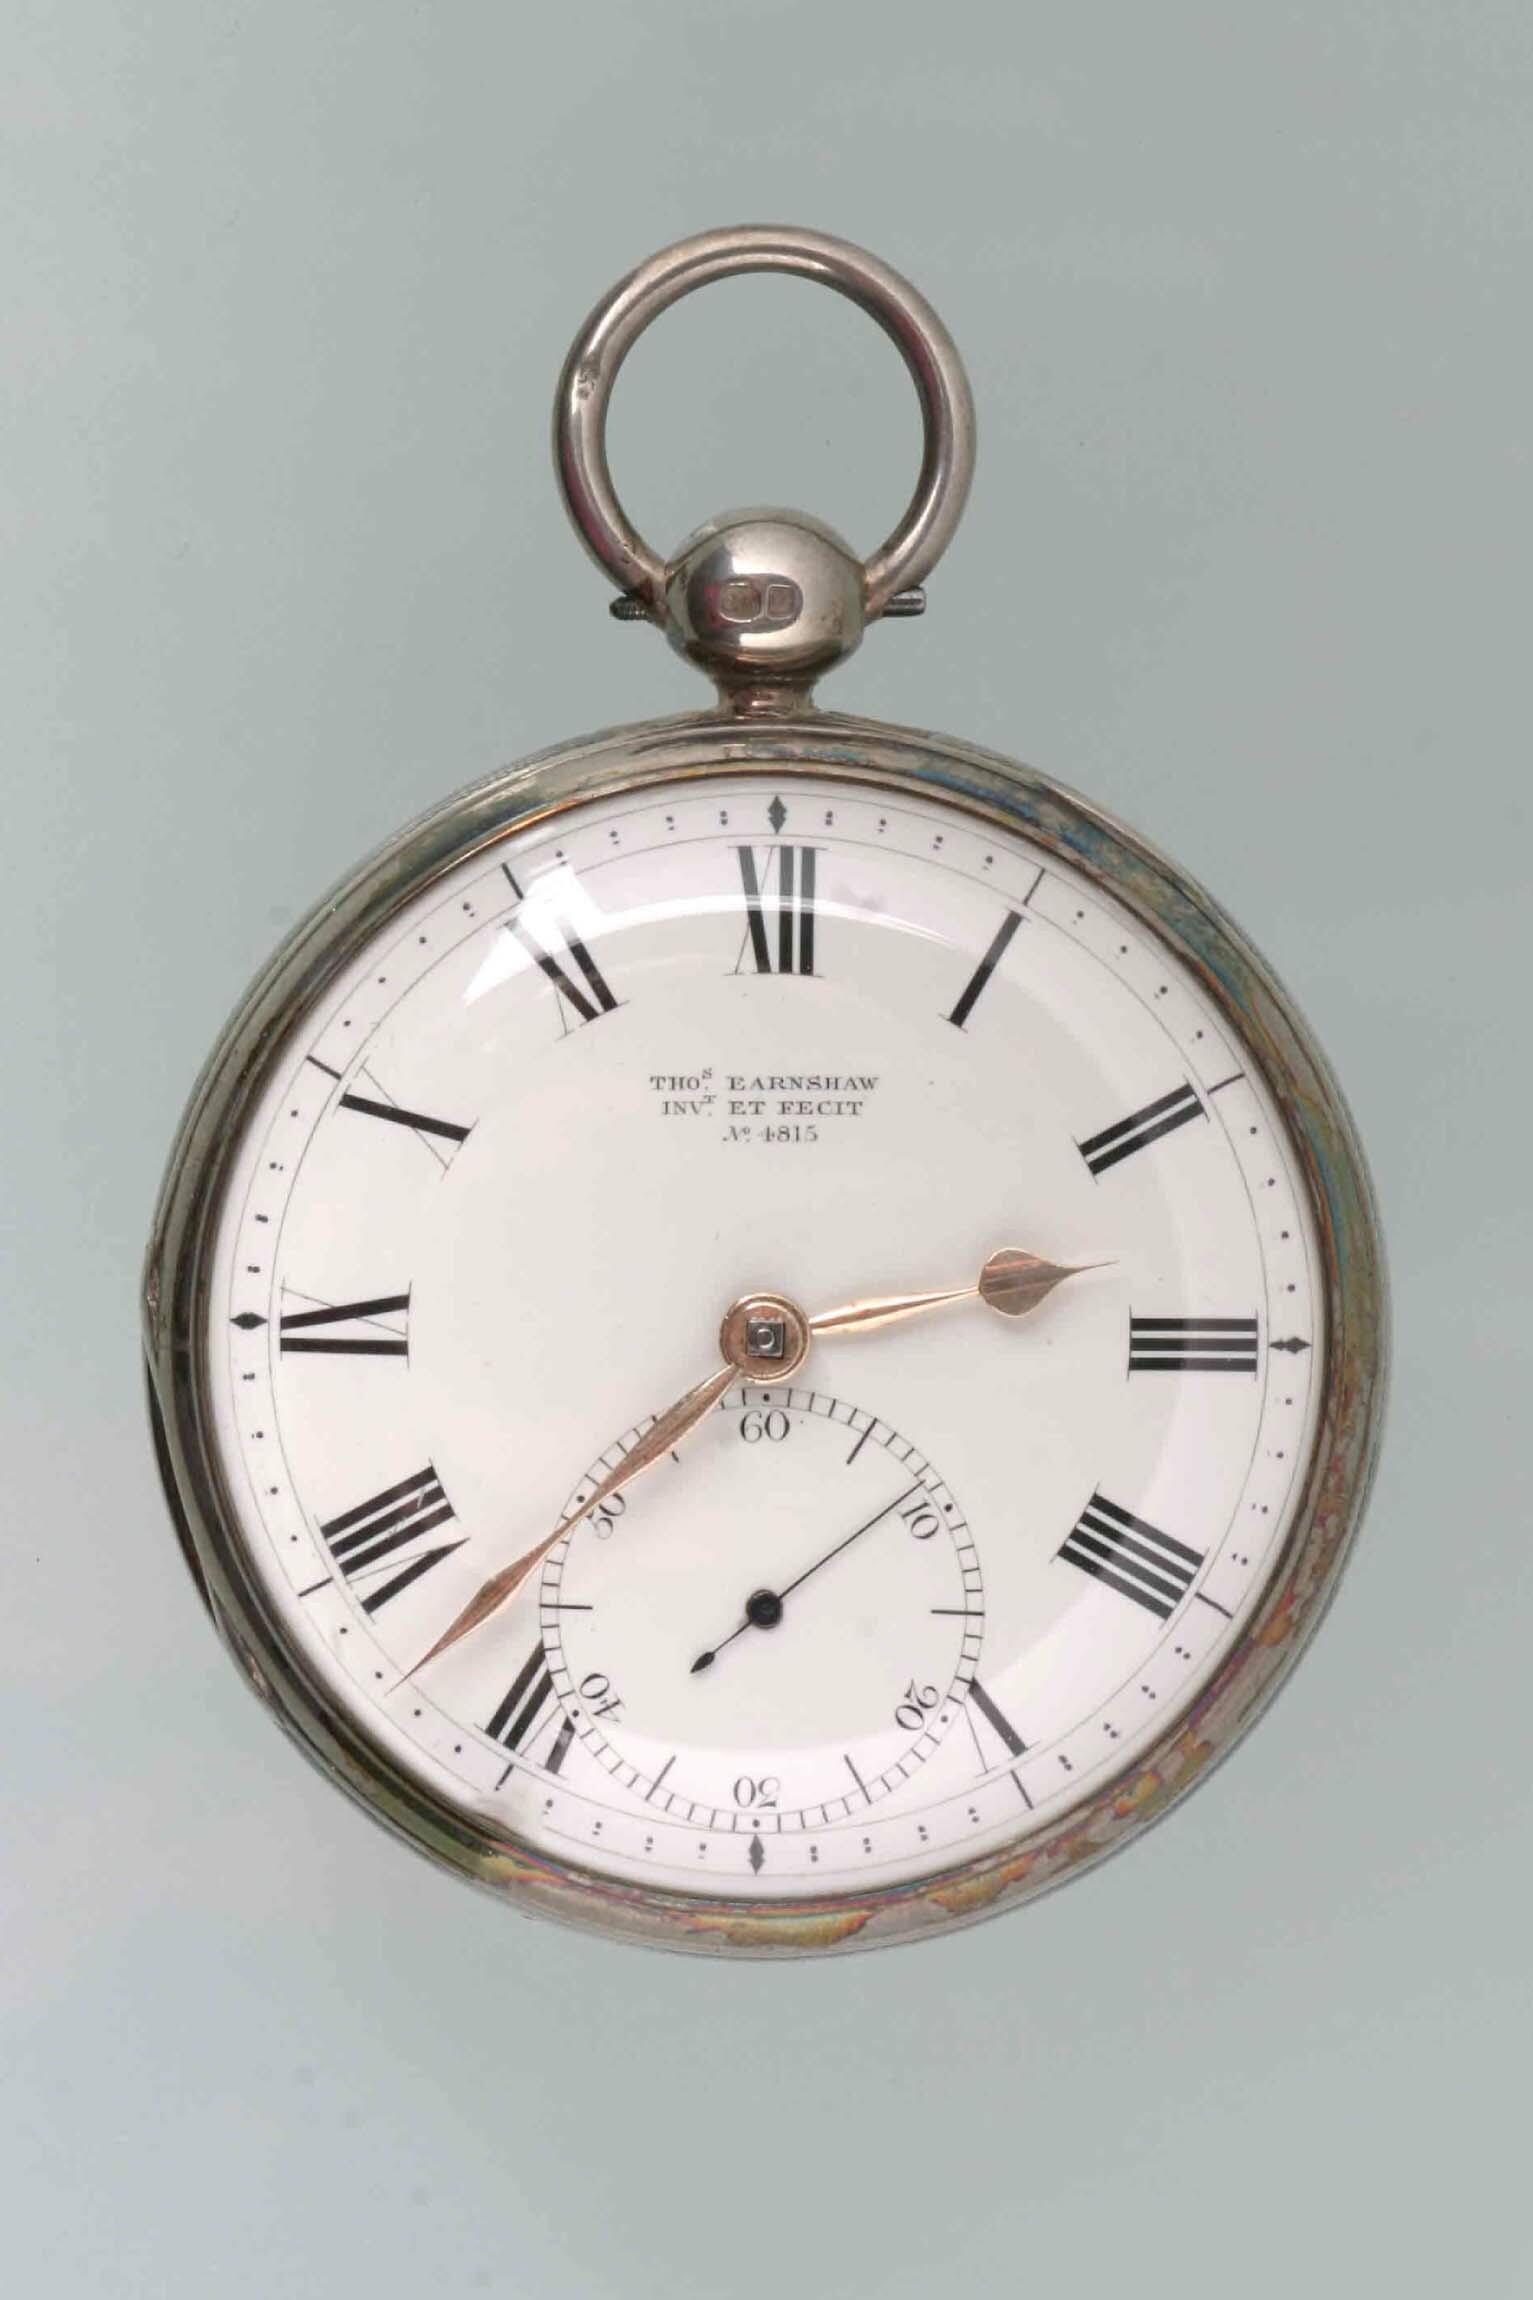 Taschenuhr, Thomas Earnshaw, London, um 1820, Gehäuse von 1832 (Deutsches Uhrenmuseum CC BY-SA)